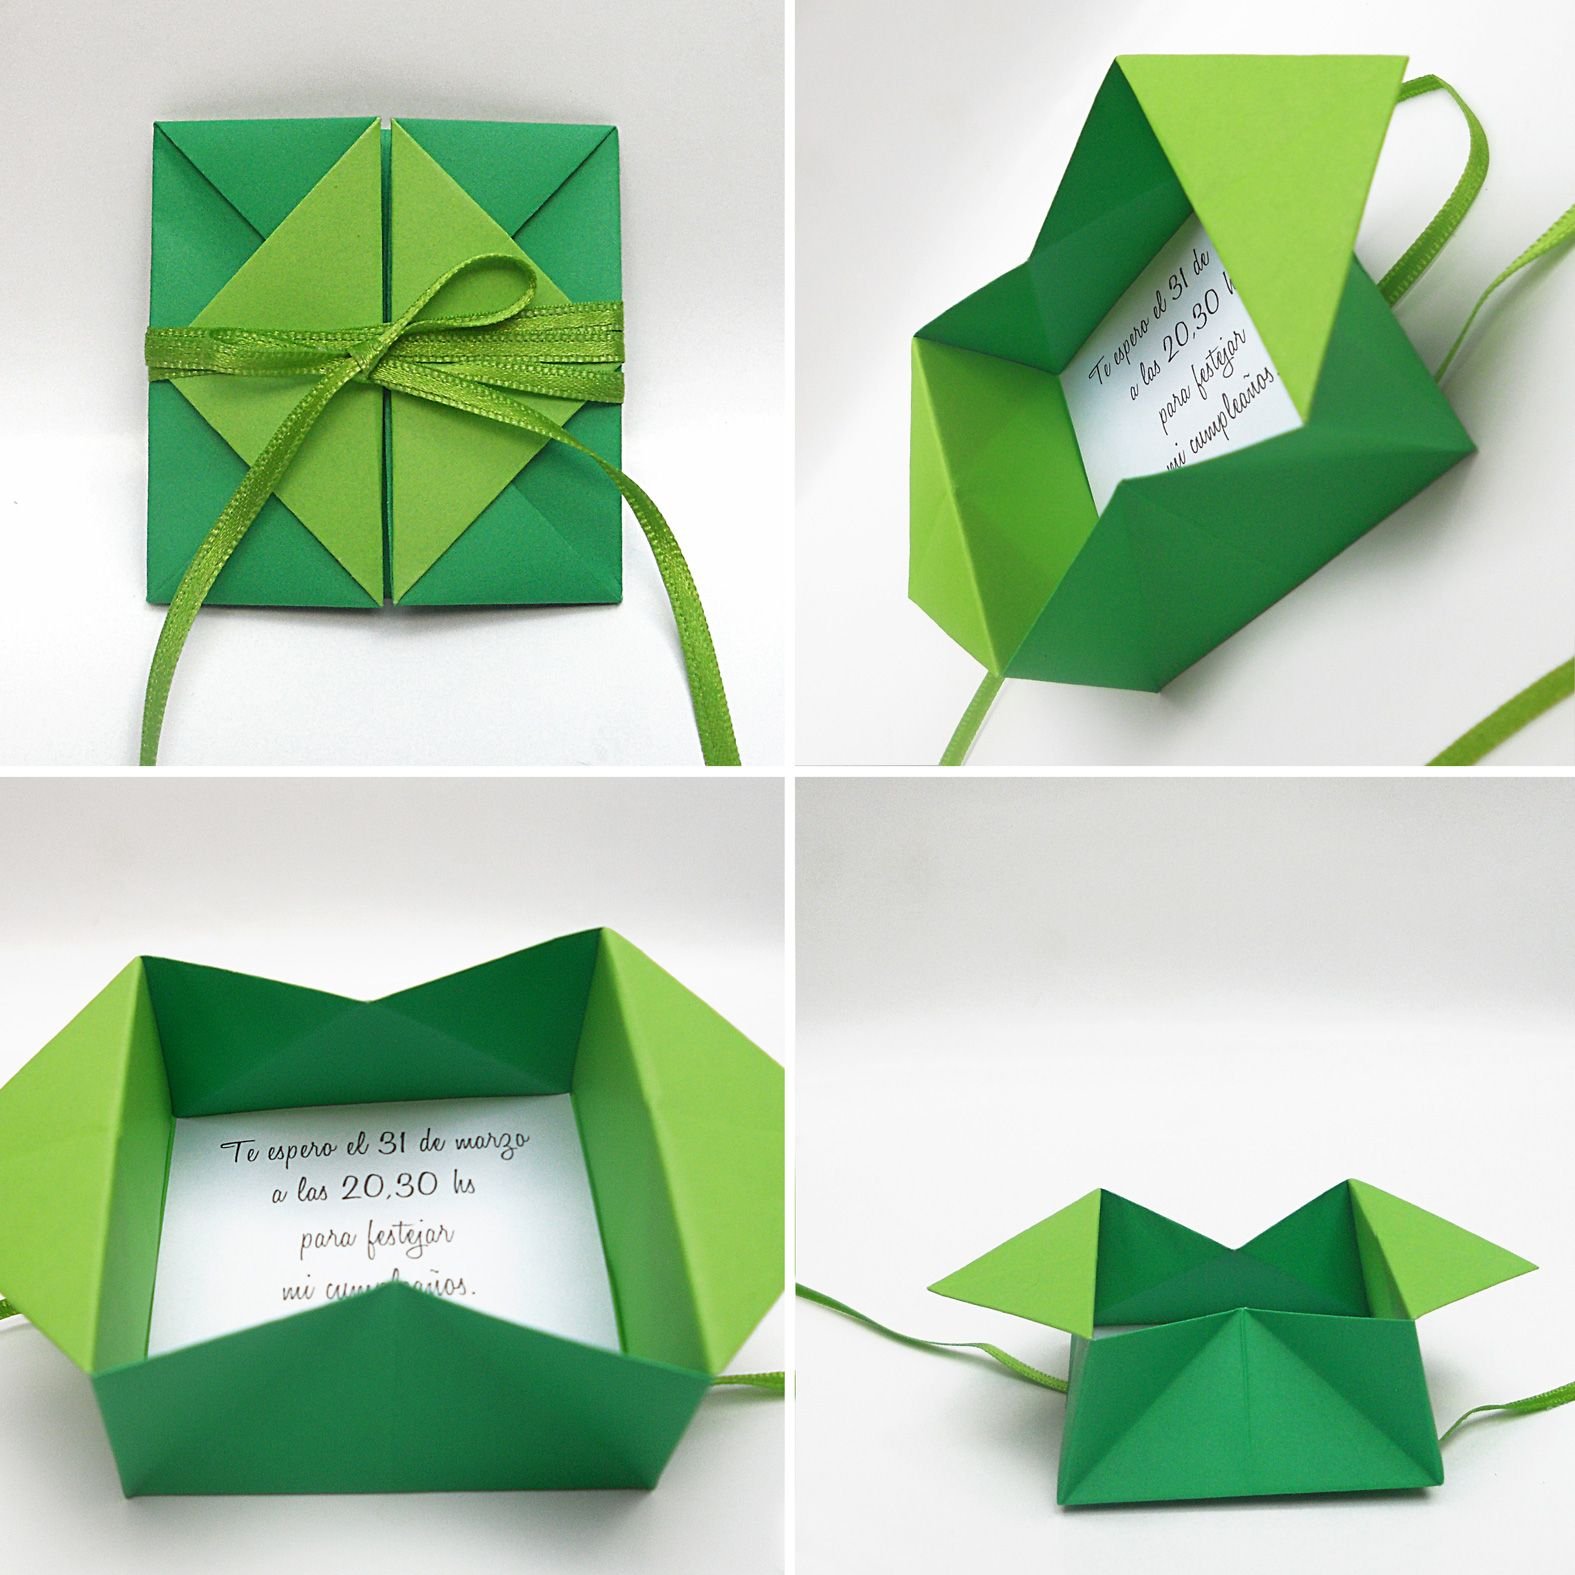 Как сделать оригами на день рождения маме, папе или бабушке